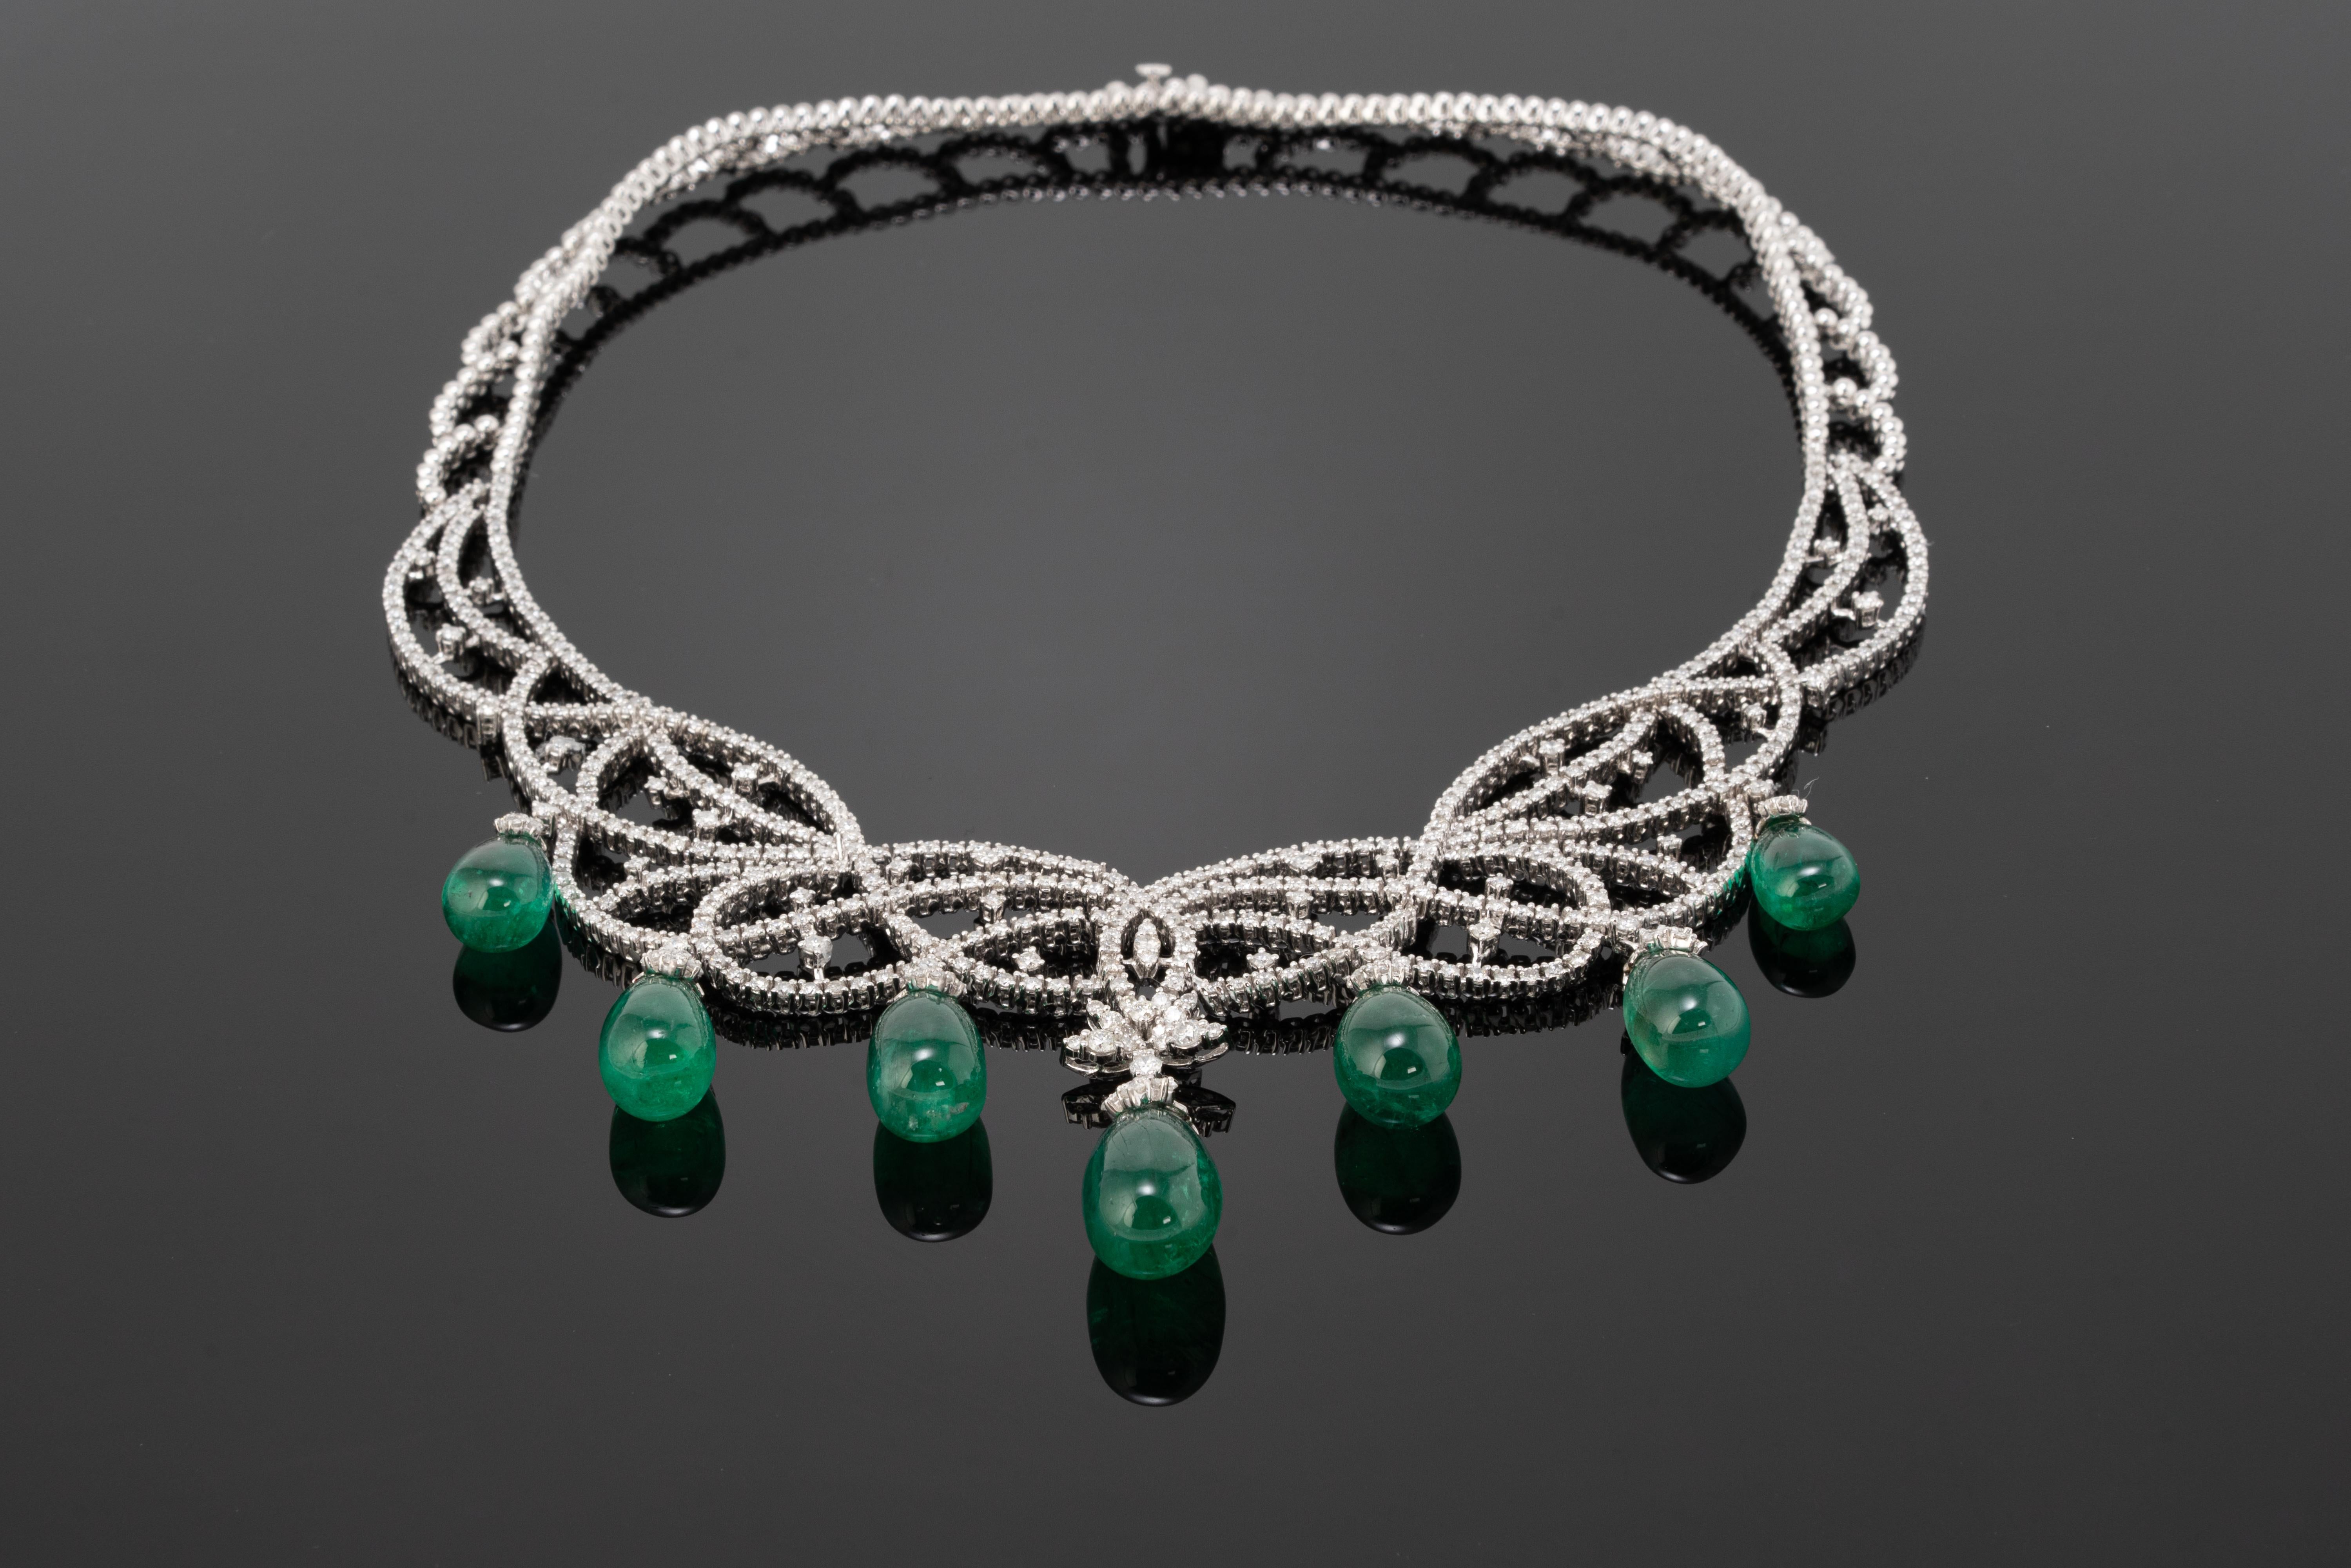 Eine atemberaubende, einzigartige, natürliche 81,90 Karat Smaragd- und Diamant-Halskette aus Sambia, die so flexibel ist, dass sie sich gut an alle Arten von Hälsen anpassen lässt. Die Smaragde sind von sehr hoher Qualität, transparent mit großem